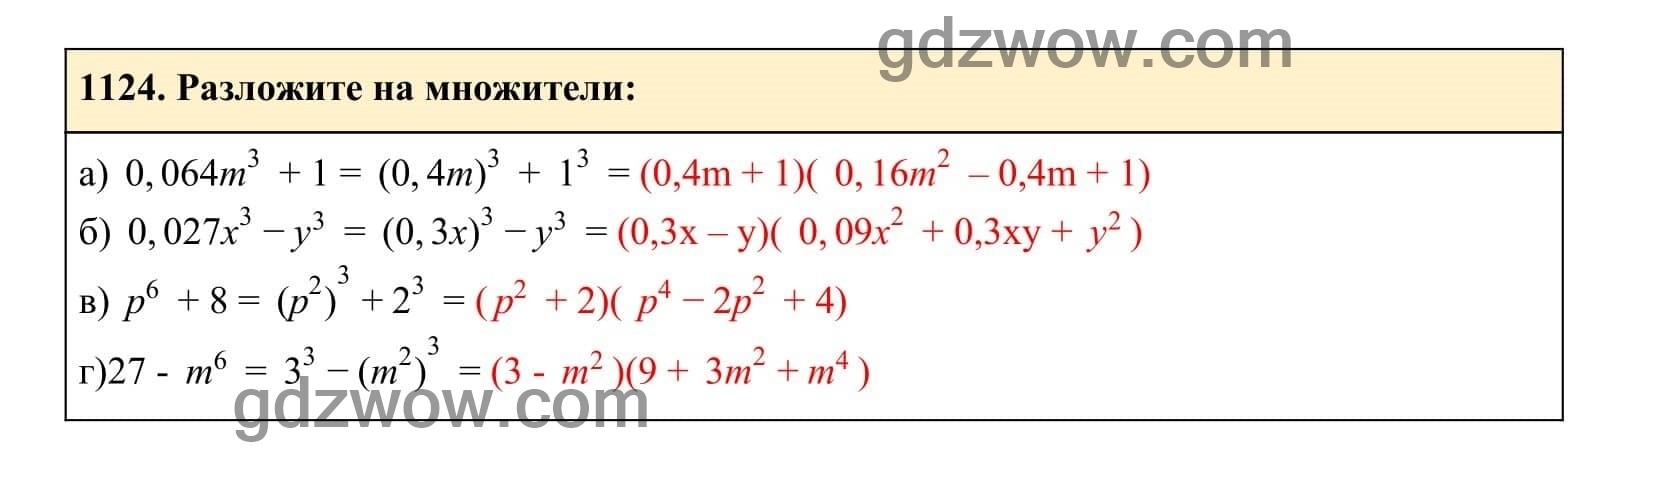 Упражнение 1124 - ГДЗ по Алгебре 7 класс Учебник Макарычев (решебник) - GDZwow